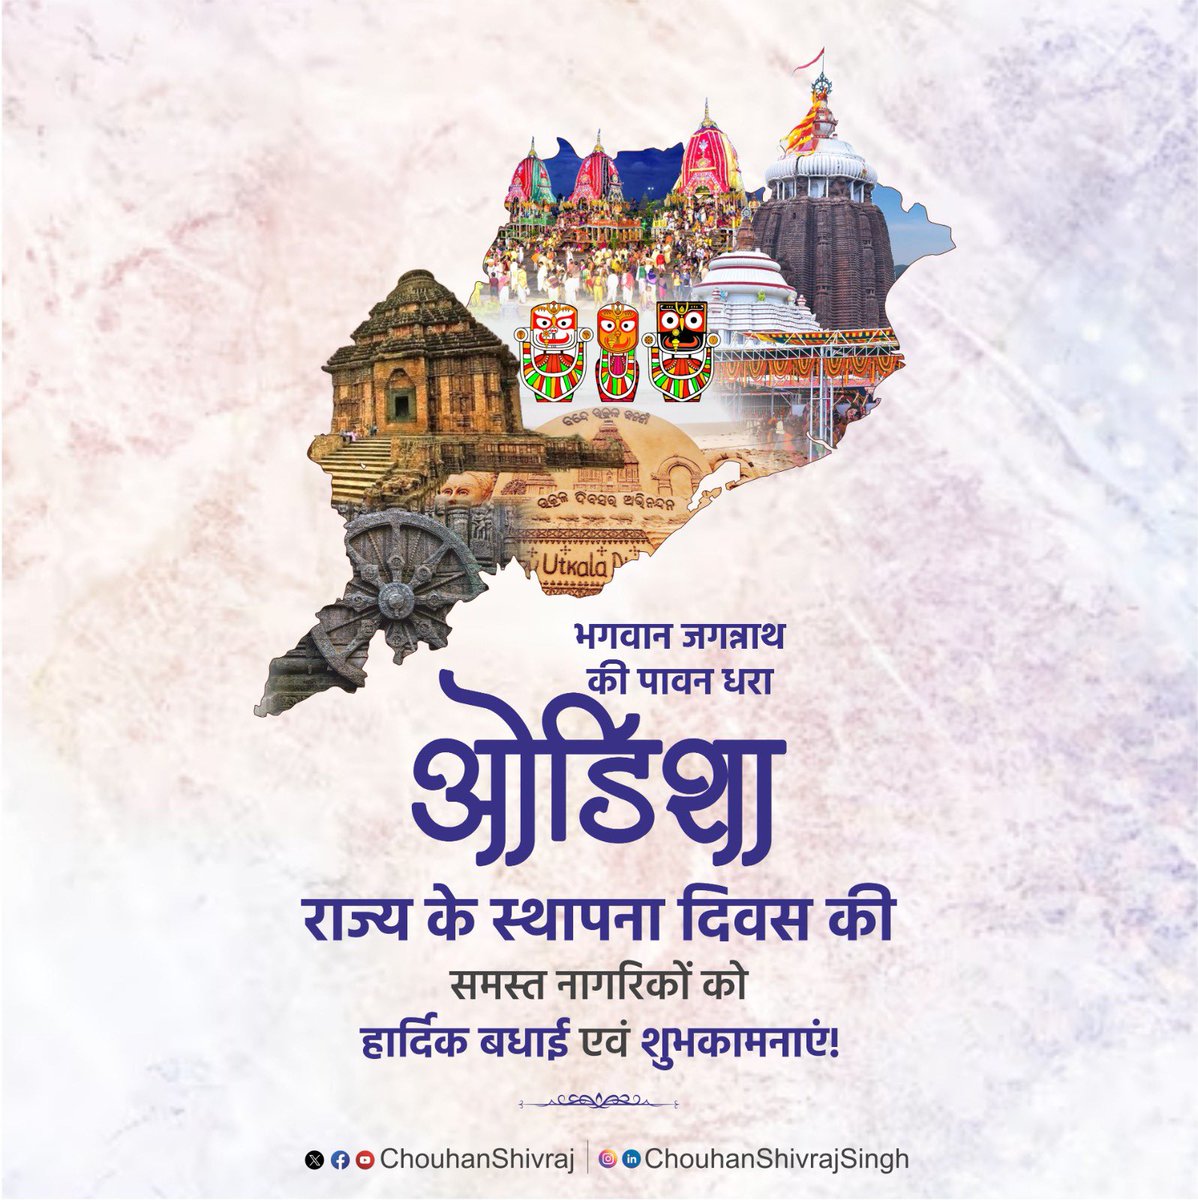 भगवान जगन्नाथ की पावन भूमि ओडिशा राज्य के स्थापना दिवस की समस्त ओडिशा वासियों को हार्दिक बधाई एवं शुभकामनाएं!

अपनी अनूठी कला, संस्कृति और समृद्ध विरासतों को सहेजे यह प्रदेश विकास व प्रगति की नई ऊंचाइयों को स्पर्श करे, यही मेरी प्रार्थना है।

#UtkalDivas